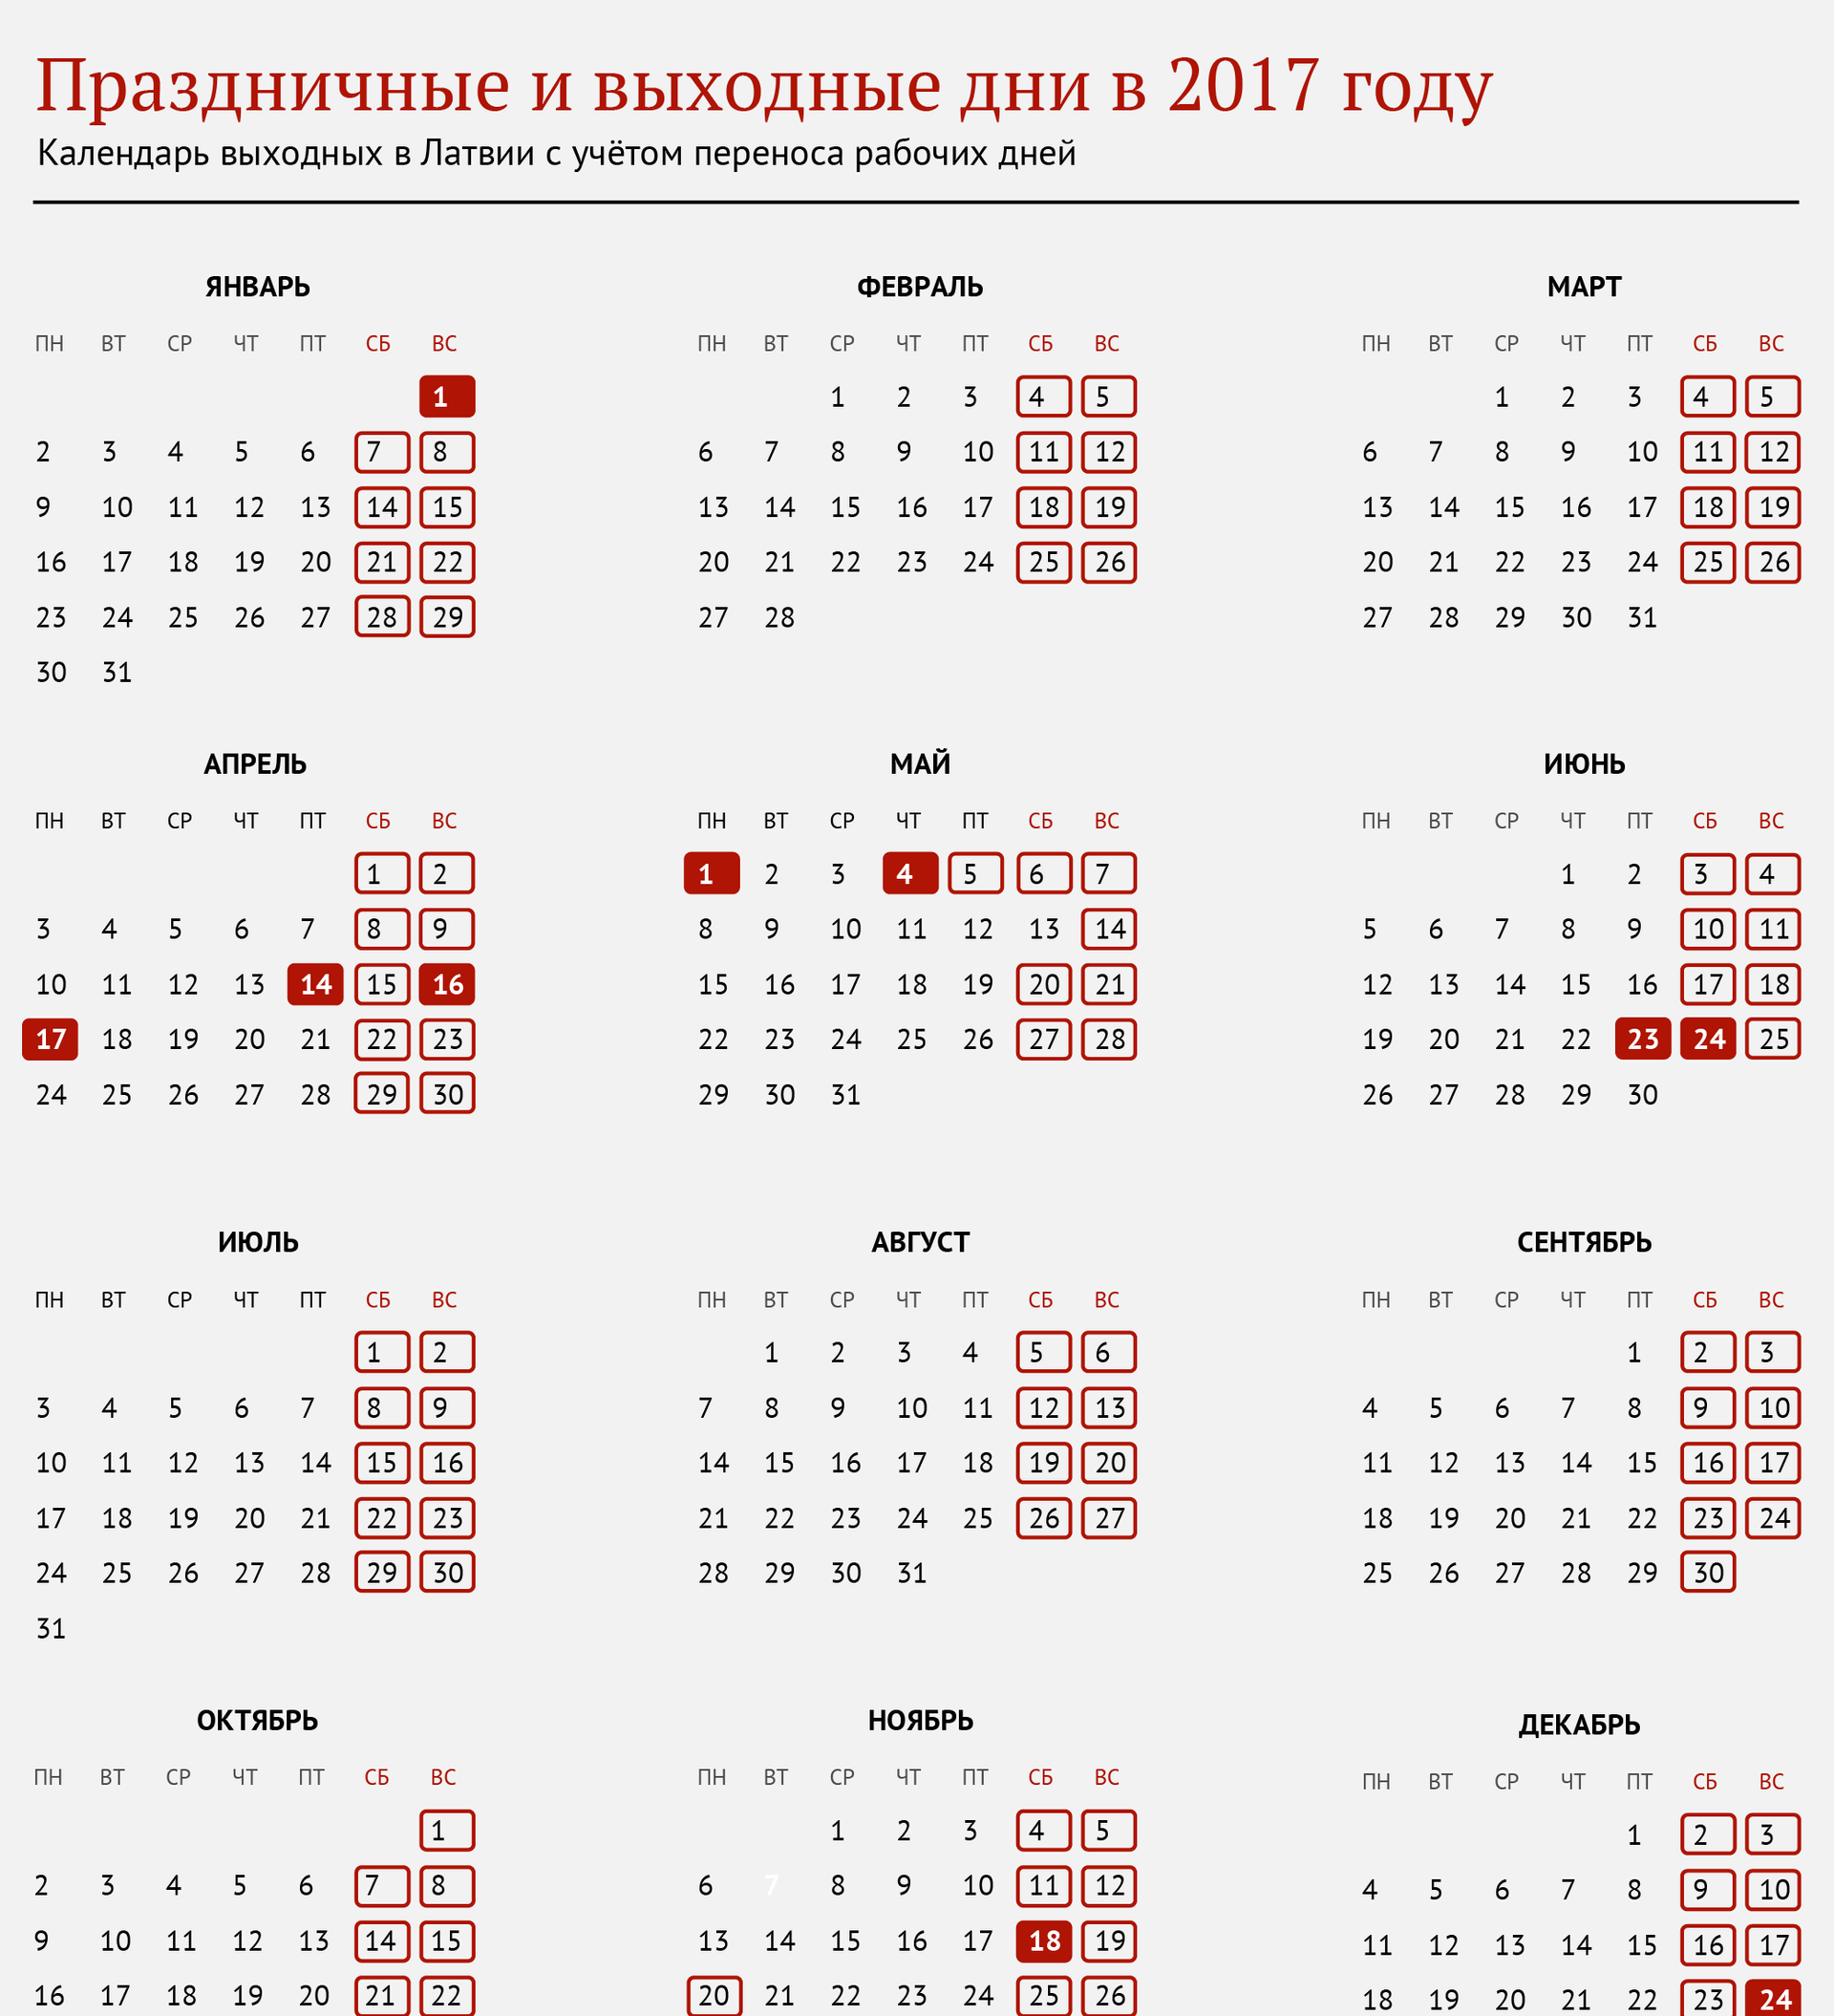 Календарь праздников. Выходные дни 2017. Выходные и праздничные дни в 2017. Праздники в 2017 и нерабочие праздничные дни.